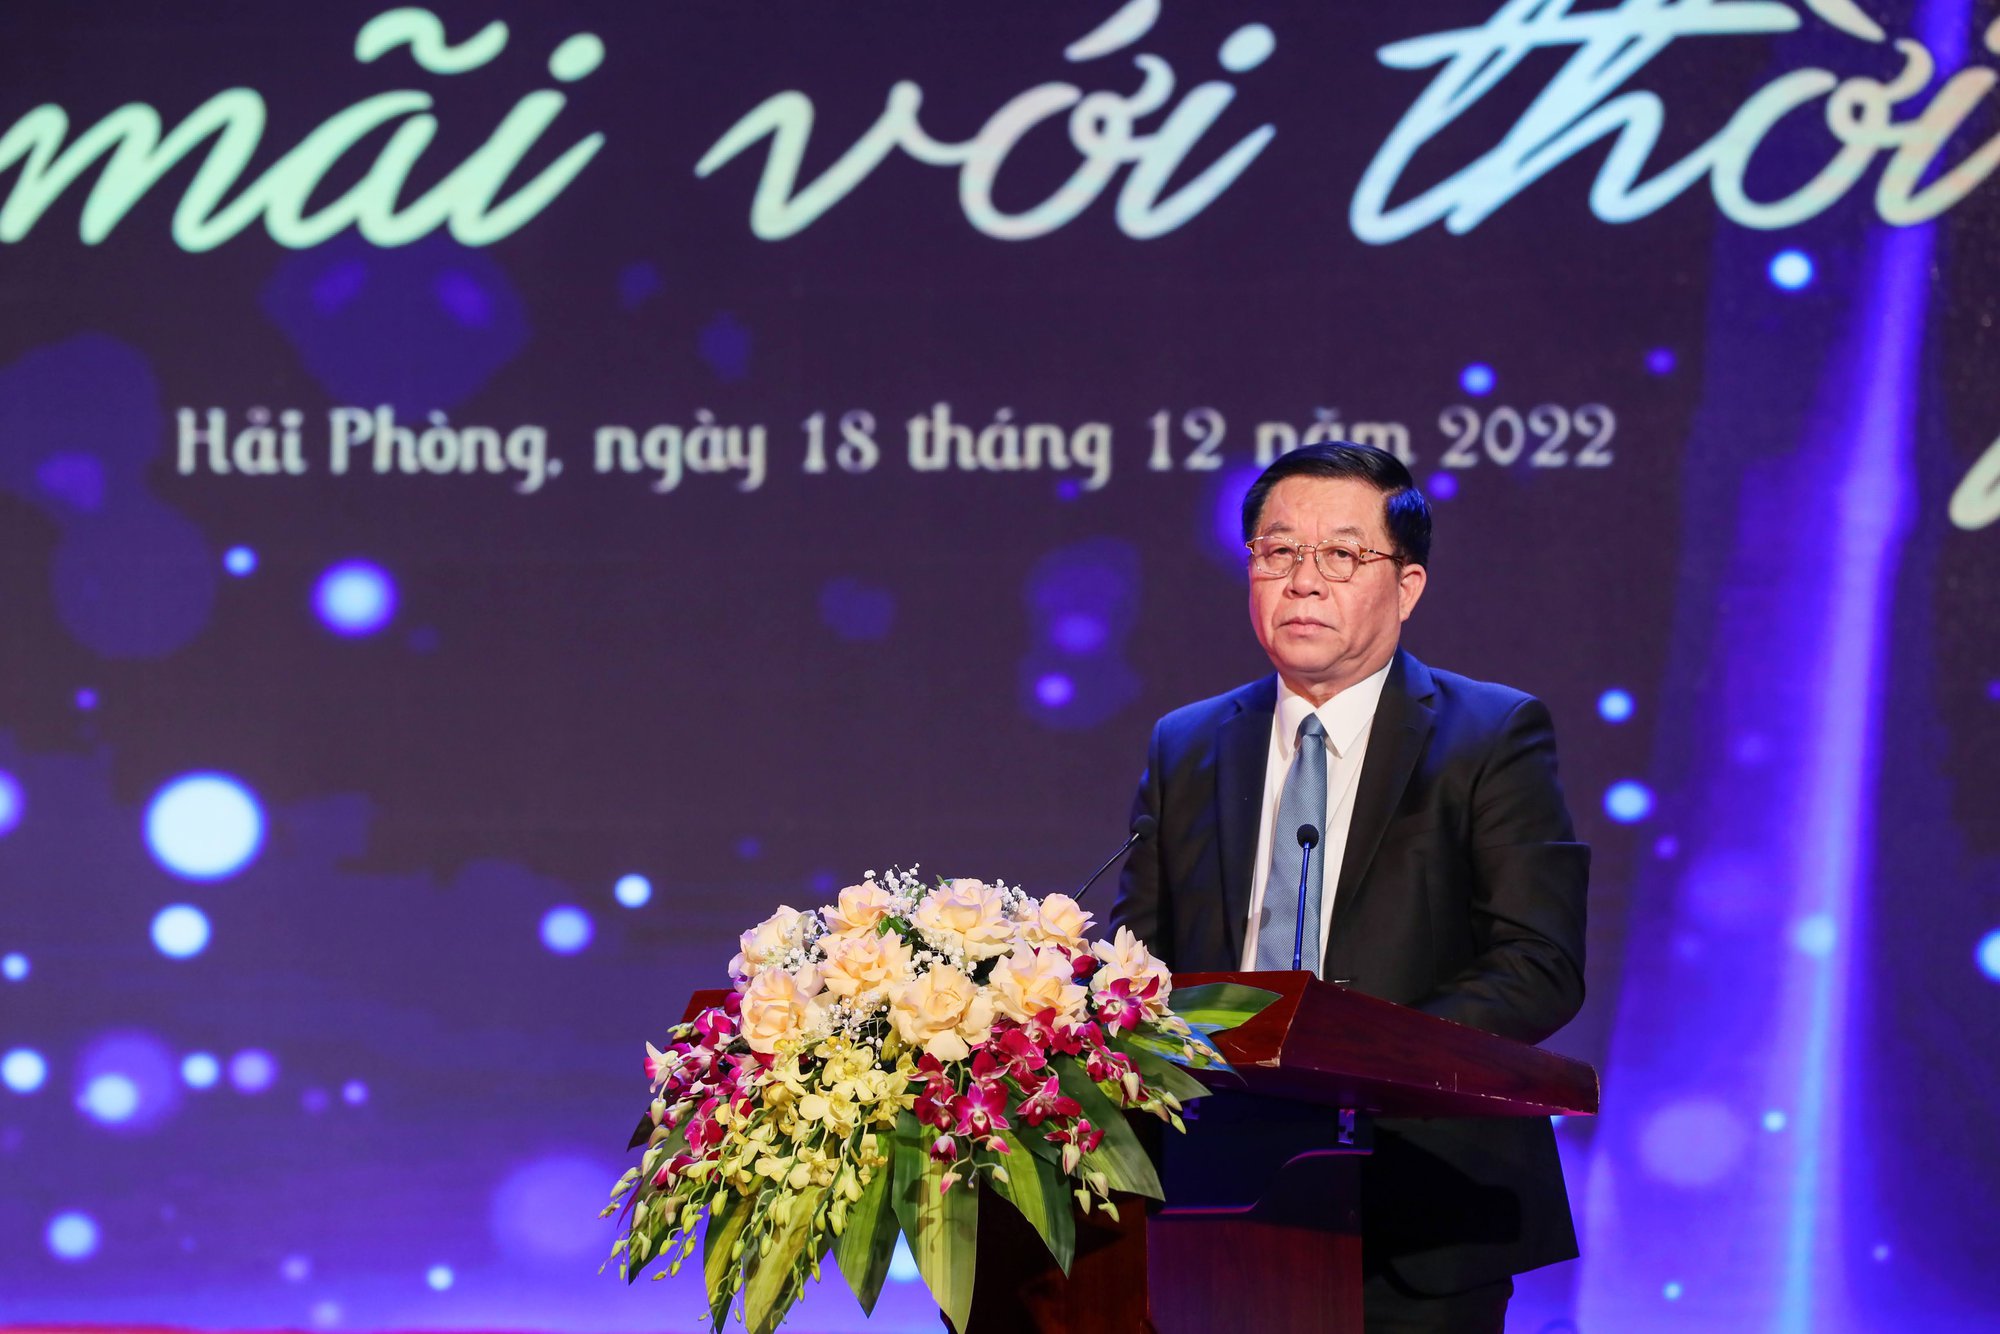 Nhà văn Nguyễn Quuang Thiều: “Văn nghệ sĩ đang cầm bút sáng tạo phải trả món nợ đối với lương tri, với dân tộc” - Ảnh 5.